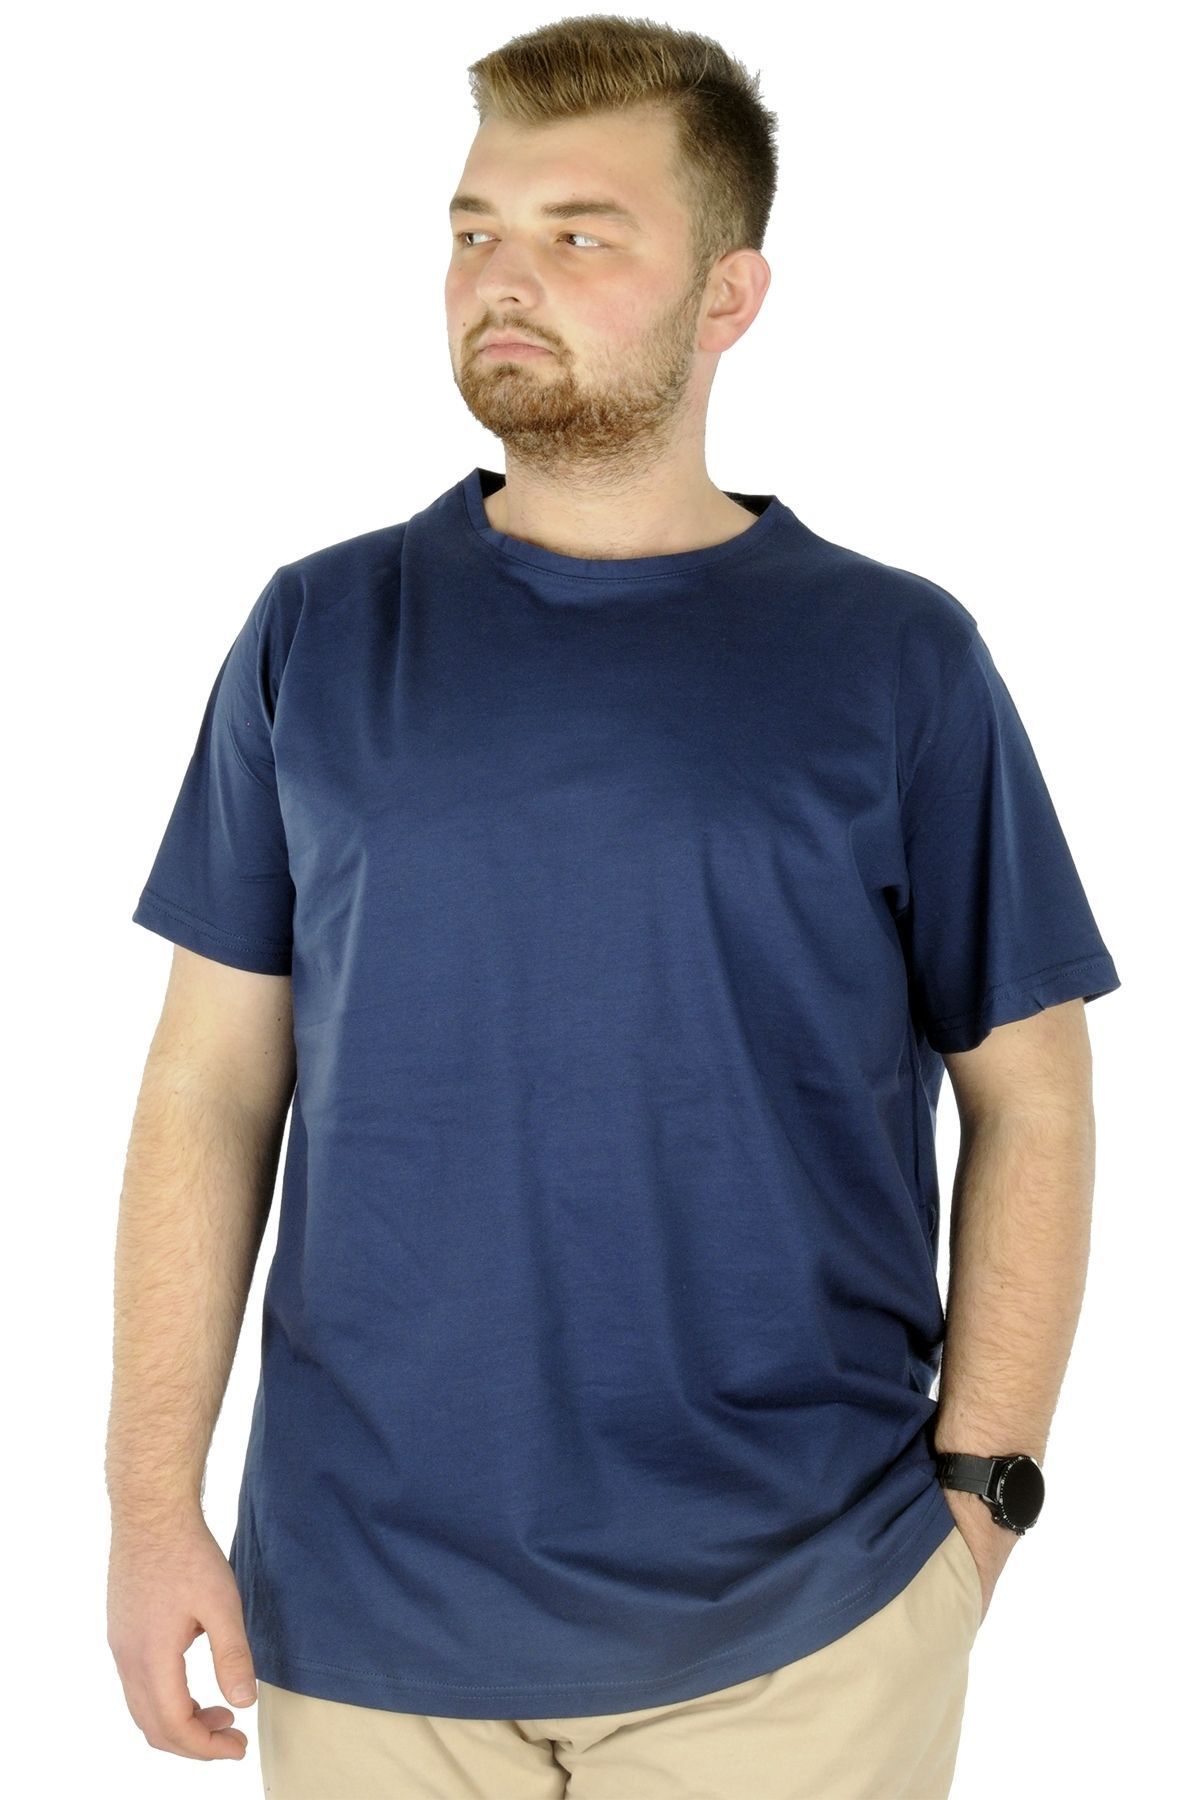 Modexl Mode Xl Büyük Beden Erkek T-shirt Basic 20031 Indigo